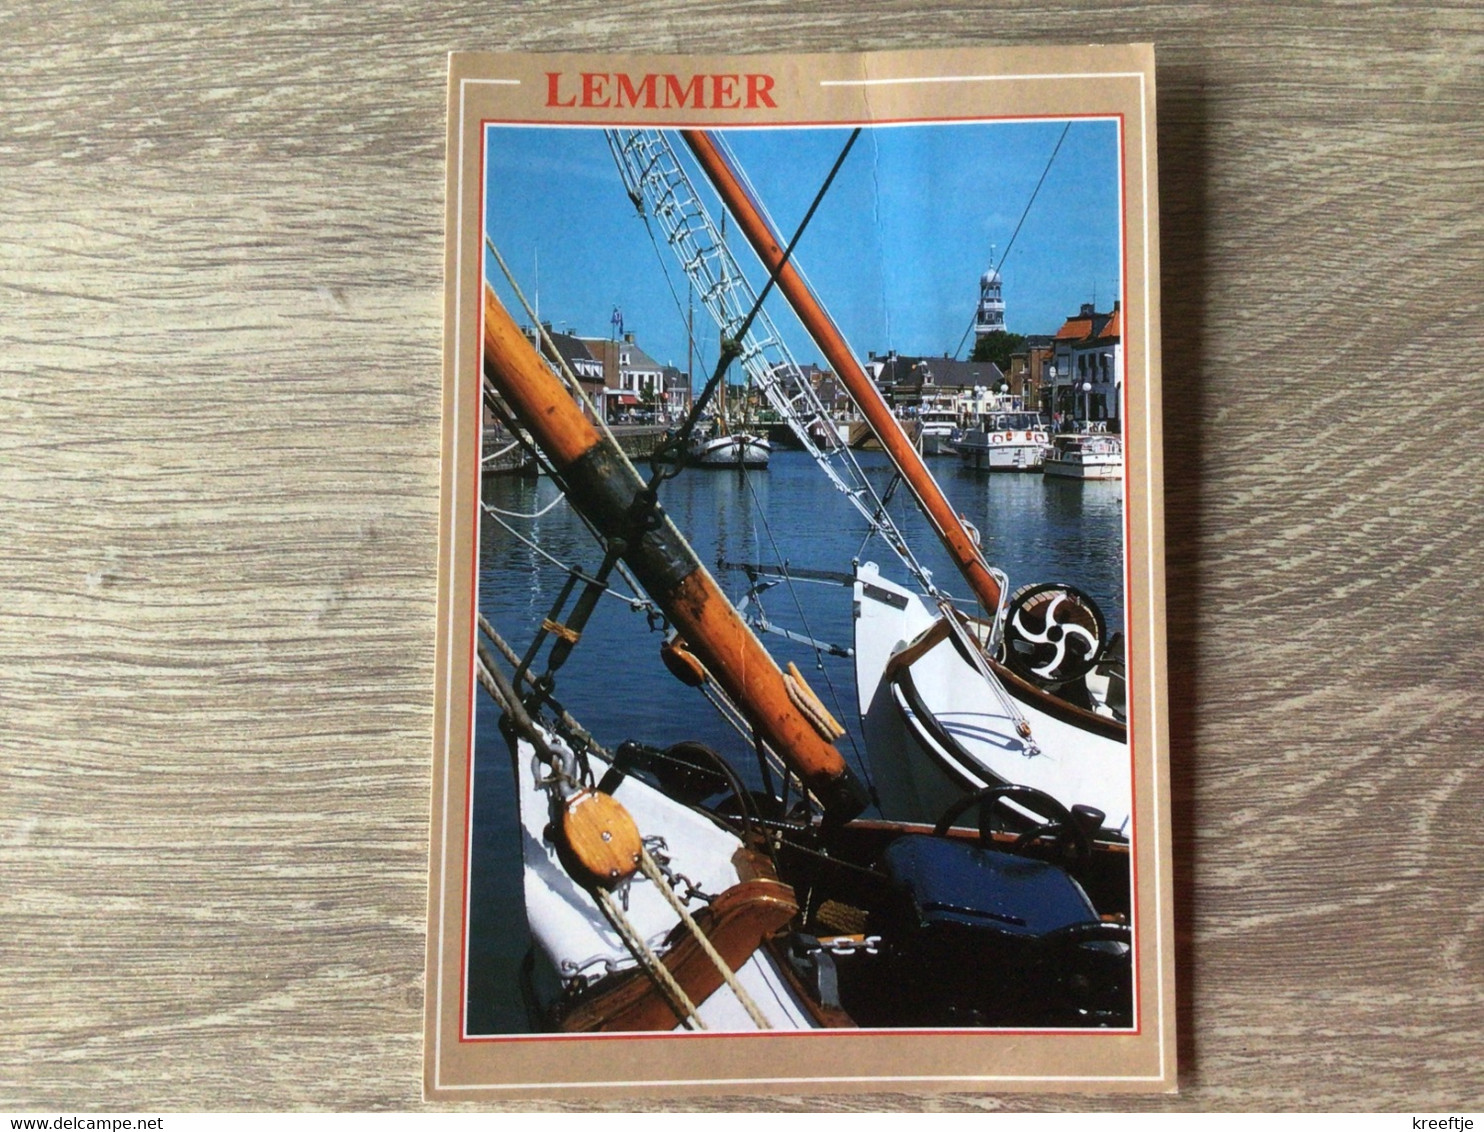 Nederland. Lemmer 1994 - Lemmer